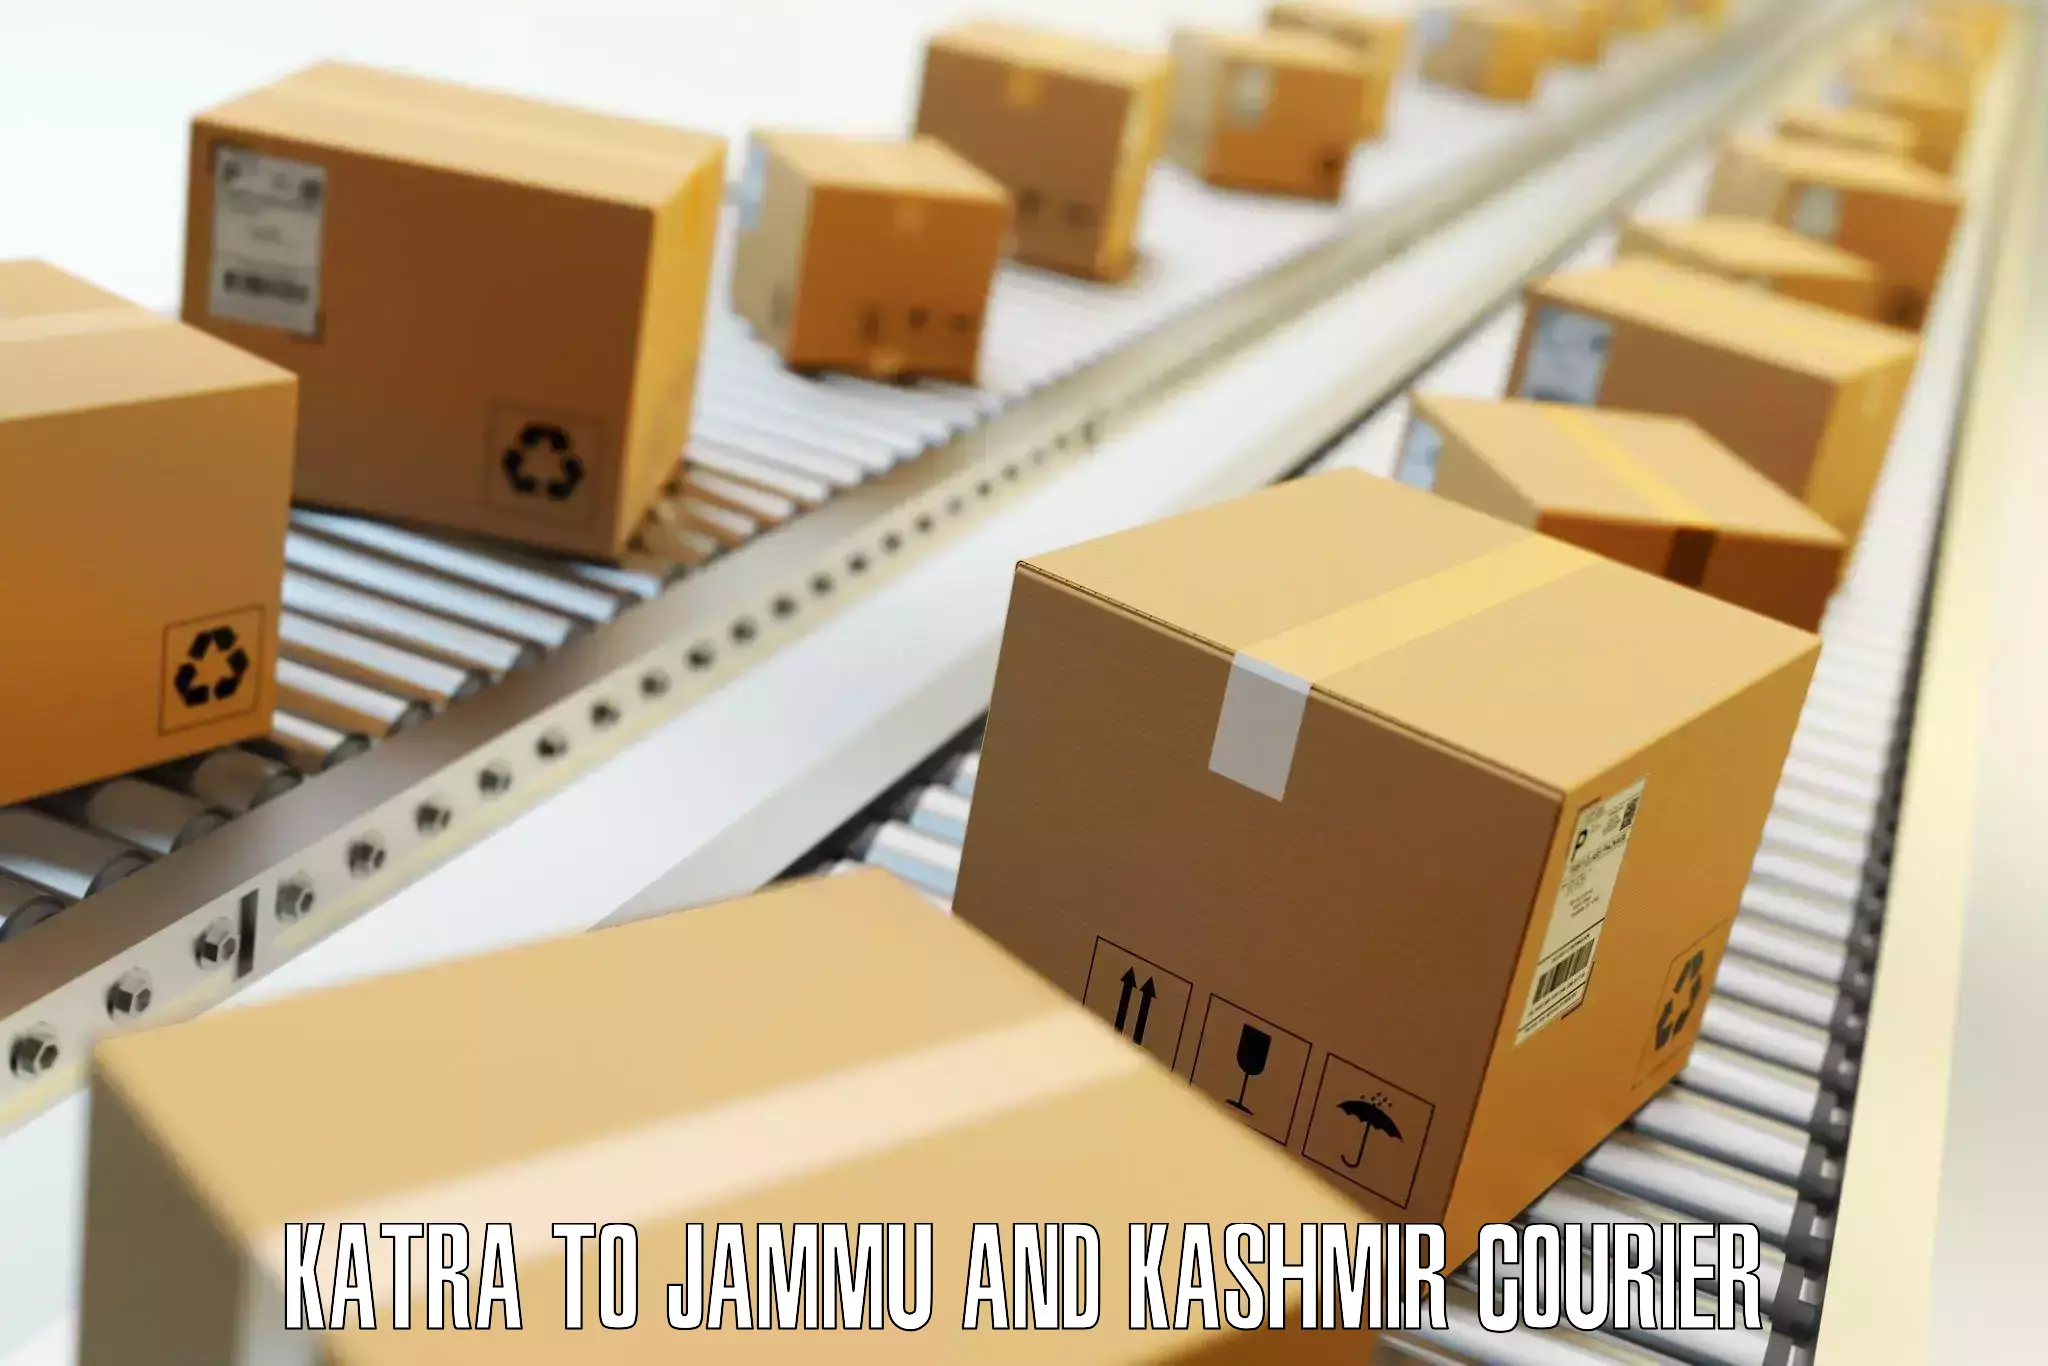 Electronic items luggage shipping Katra to Baramulla